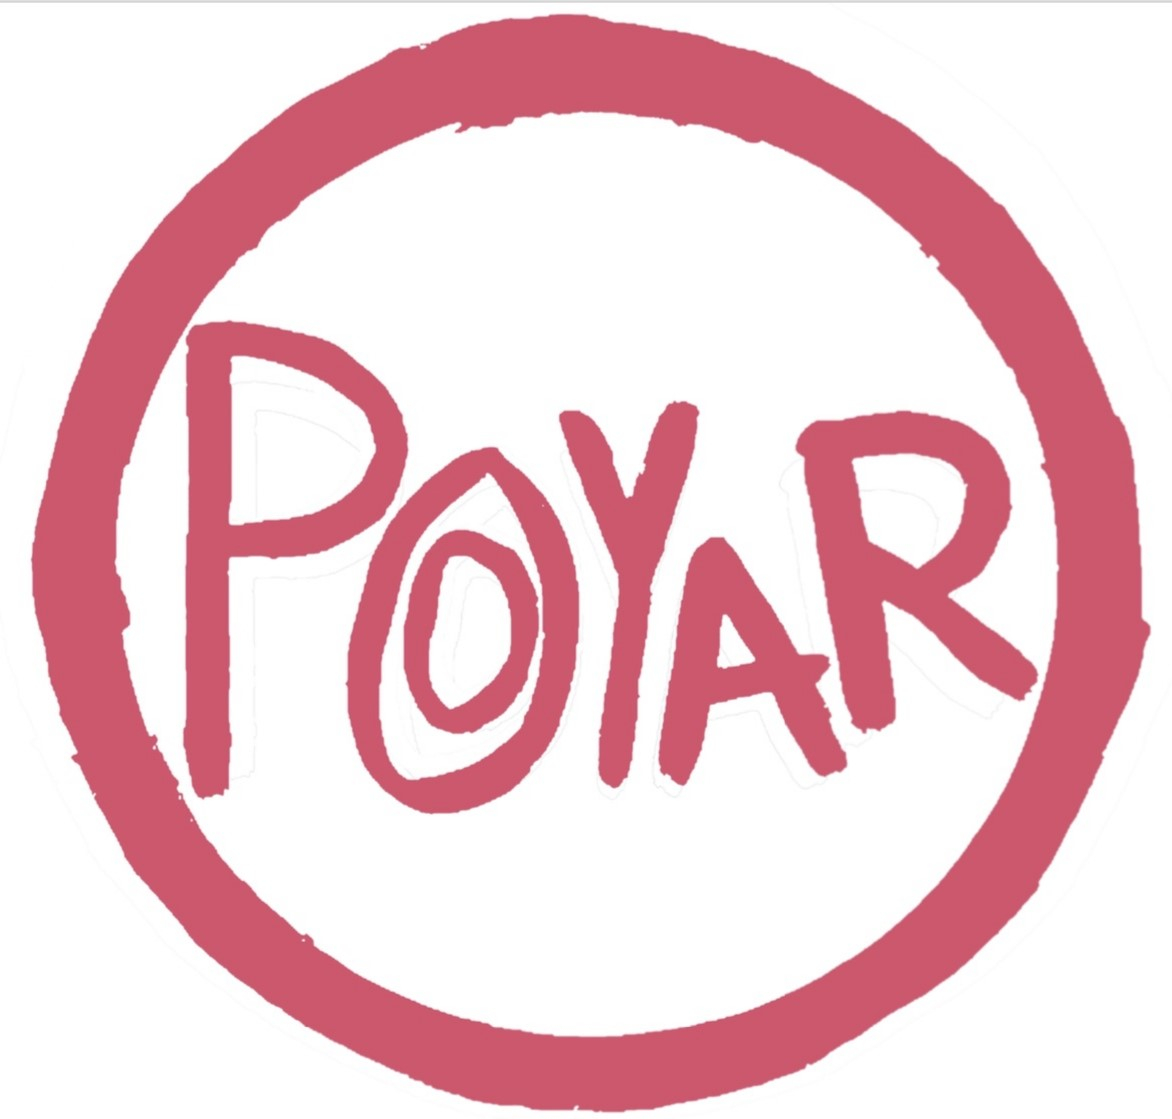 Poyar 2019 10